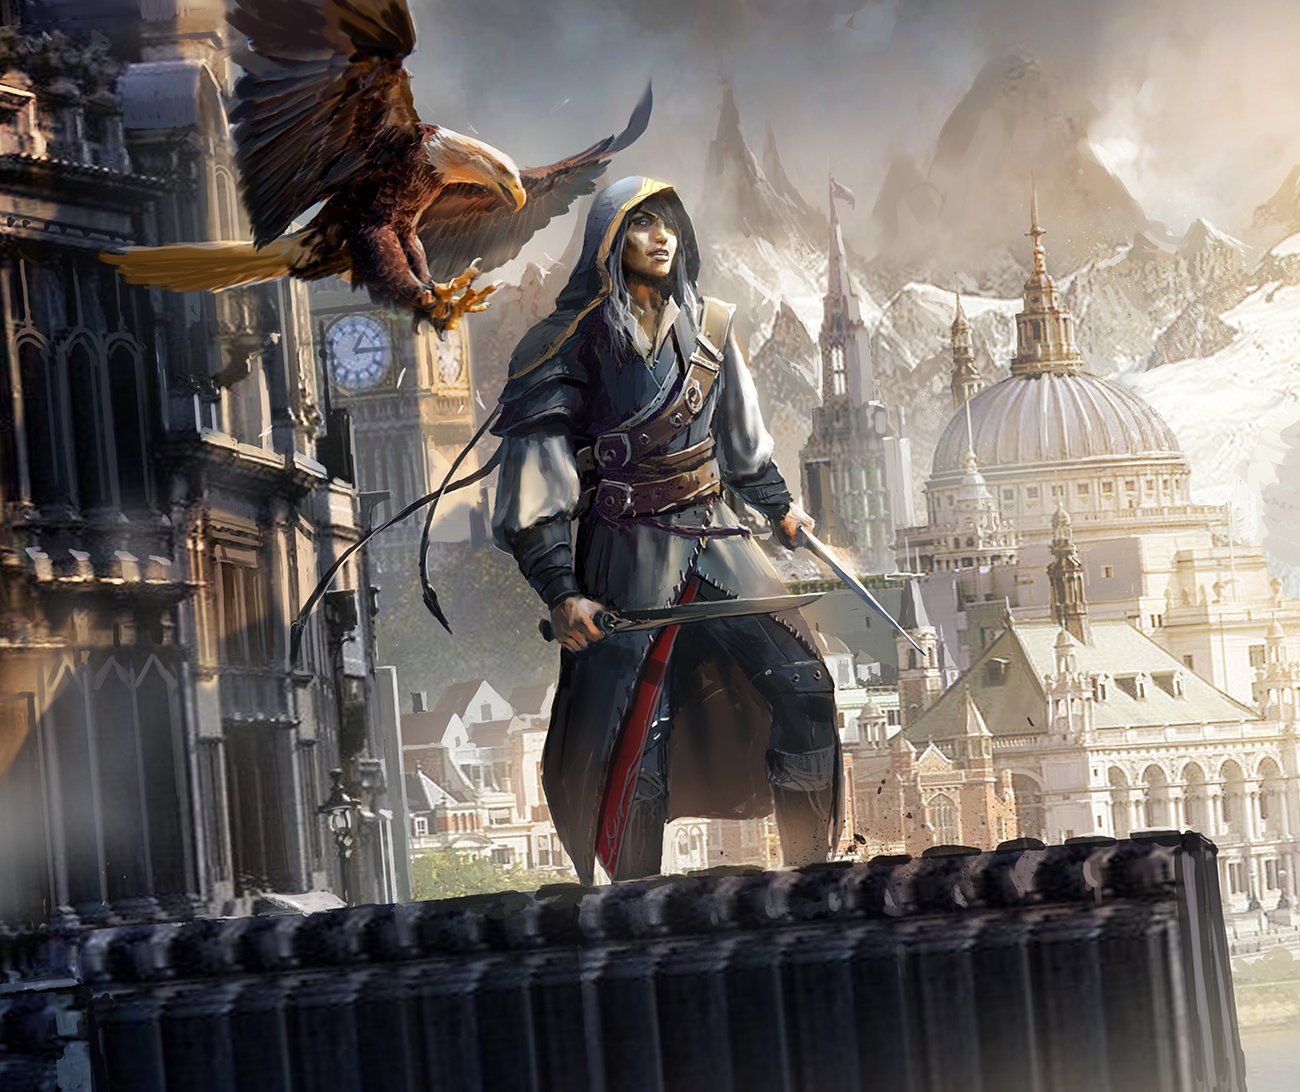 Ассасин крид арт. Assassins Creed 1 арт. Assassin's Creed 2 Art. Ассасин Крид арты. Ассасин пророк.